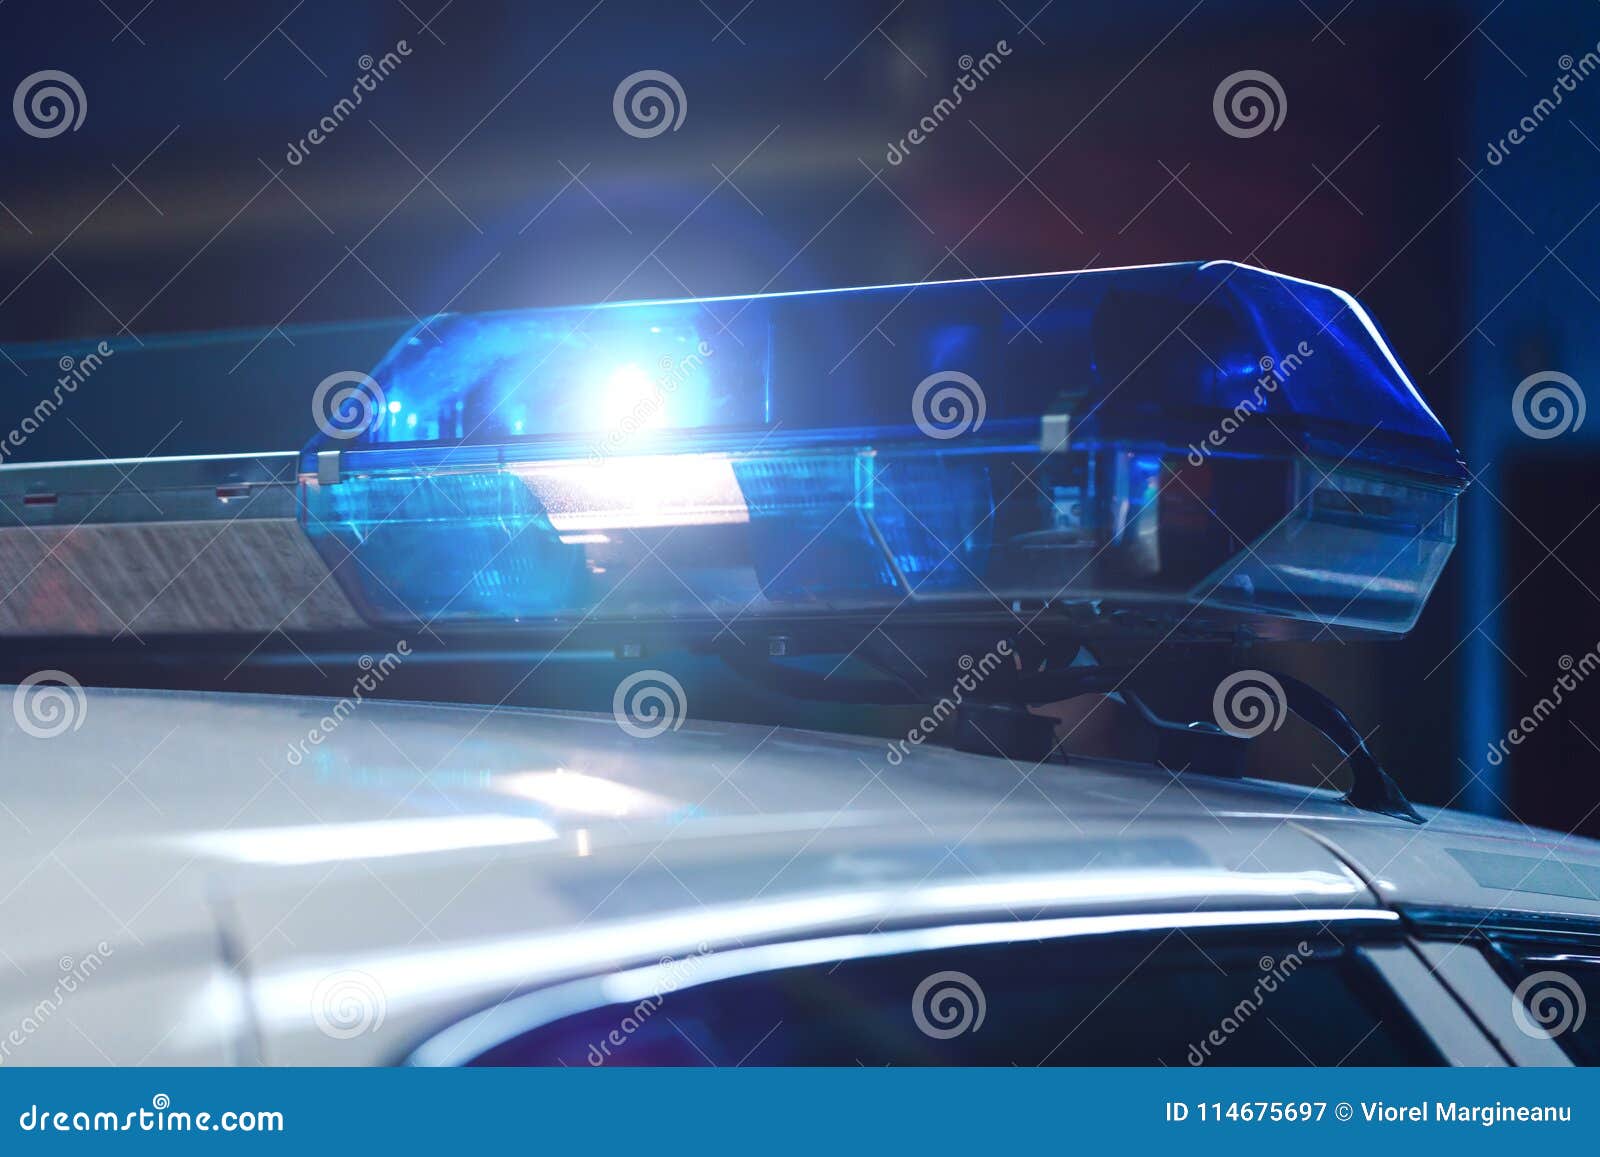 https://thumbs.dreamstime.com/z/polizei-nachts-im-auto-mit-blauem-sirenenblitzgeber-sirene-auf-pol-114675697.jpg